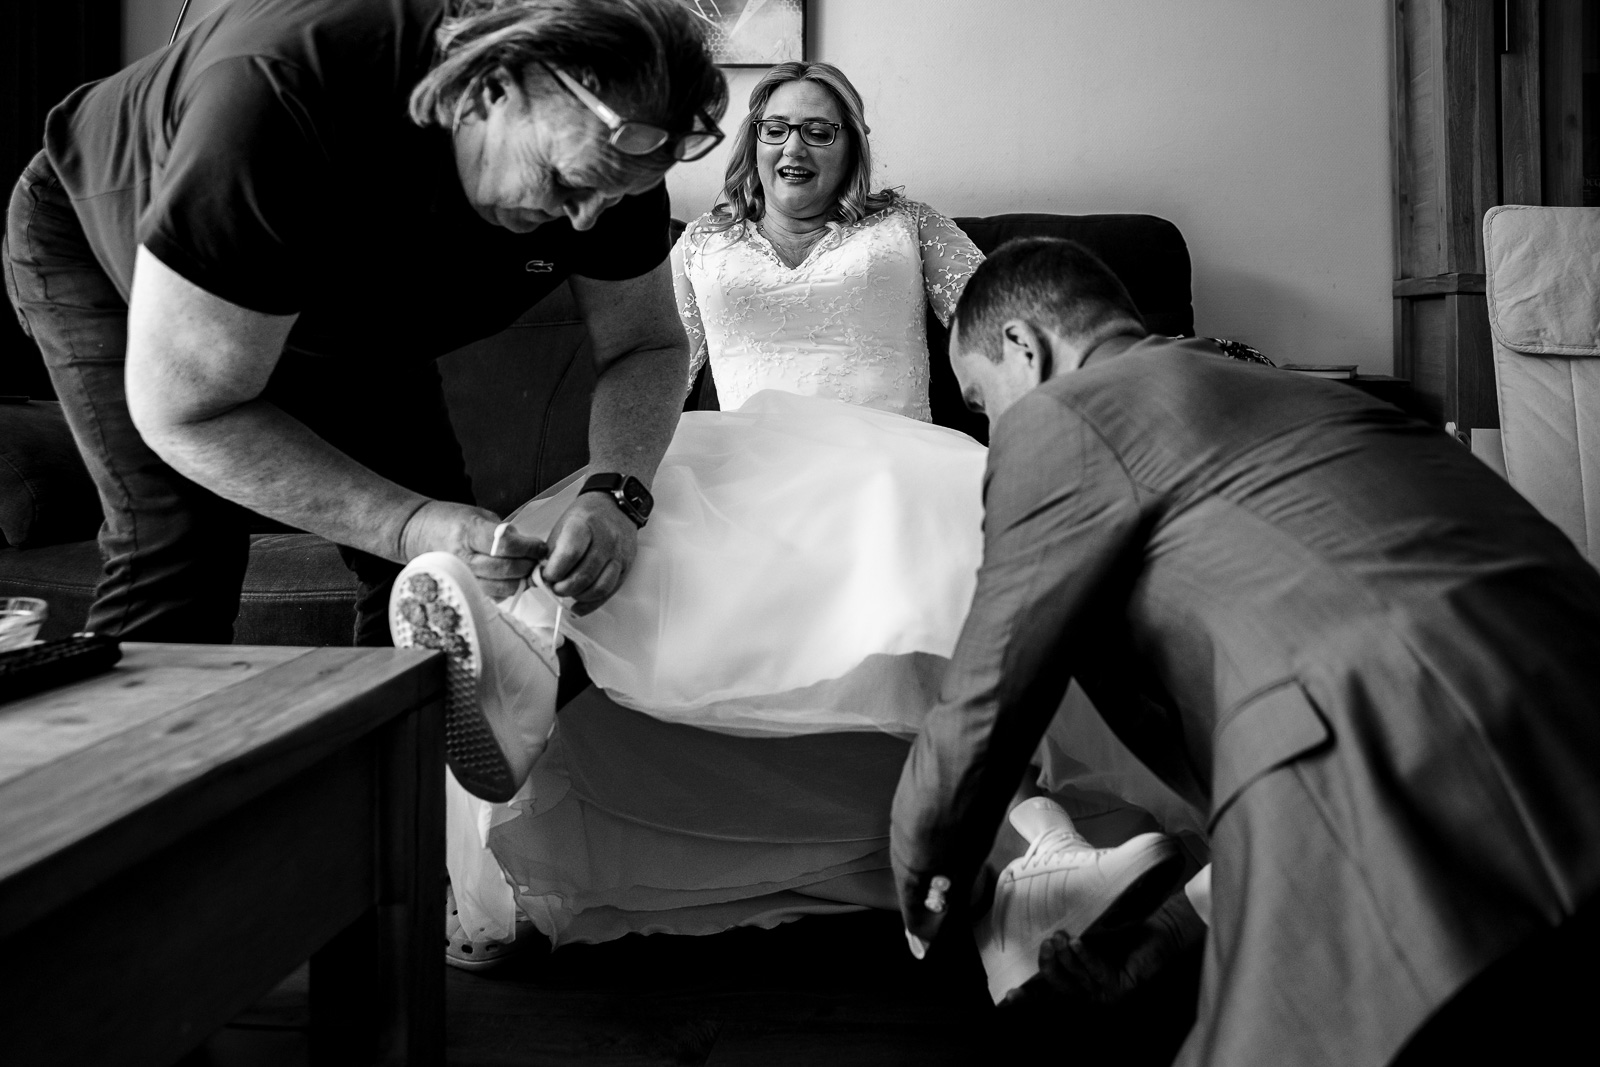 bruid krijgt hulp met schoenen aan doen Trouwfotograaf Spaansche Hof Den Haag